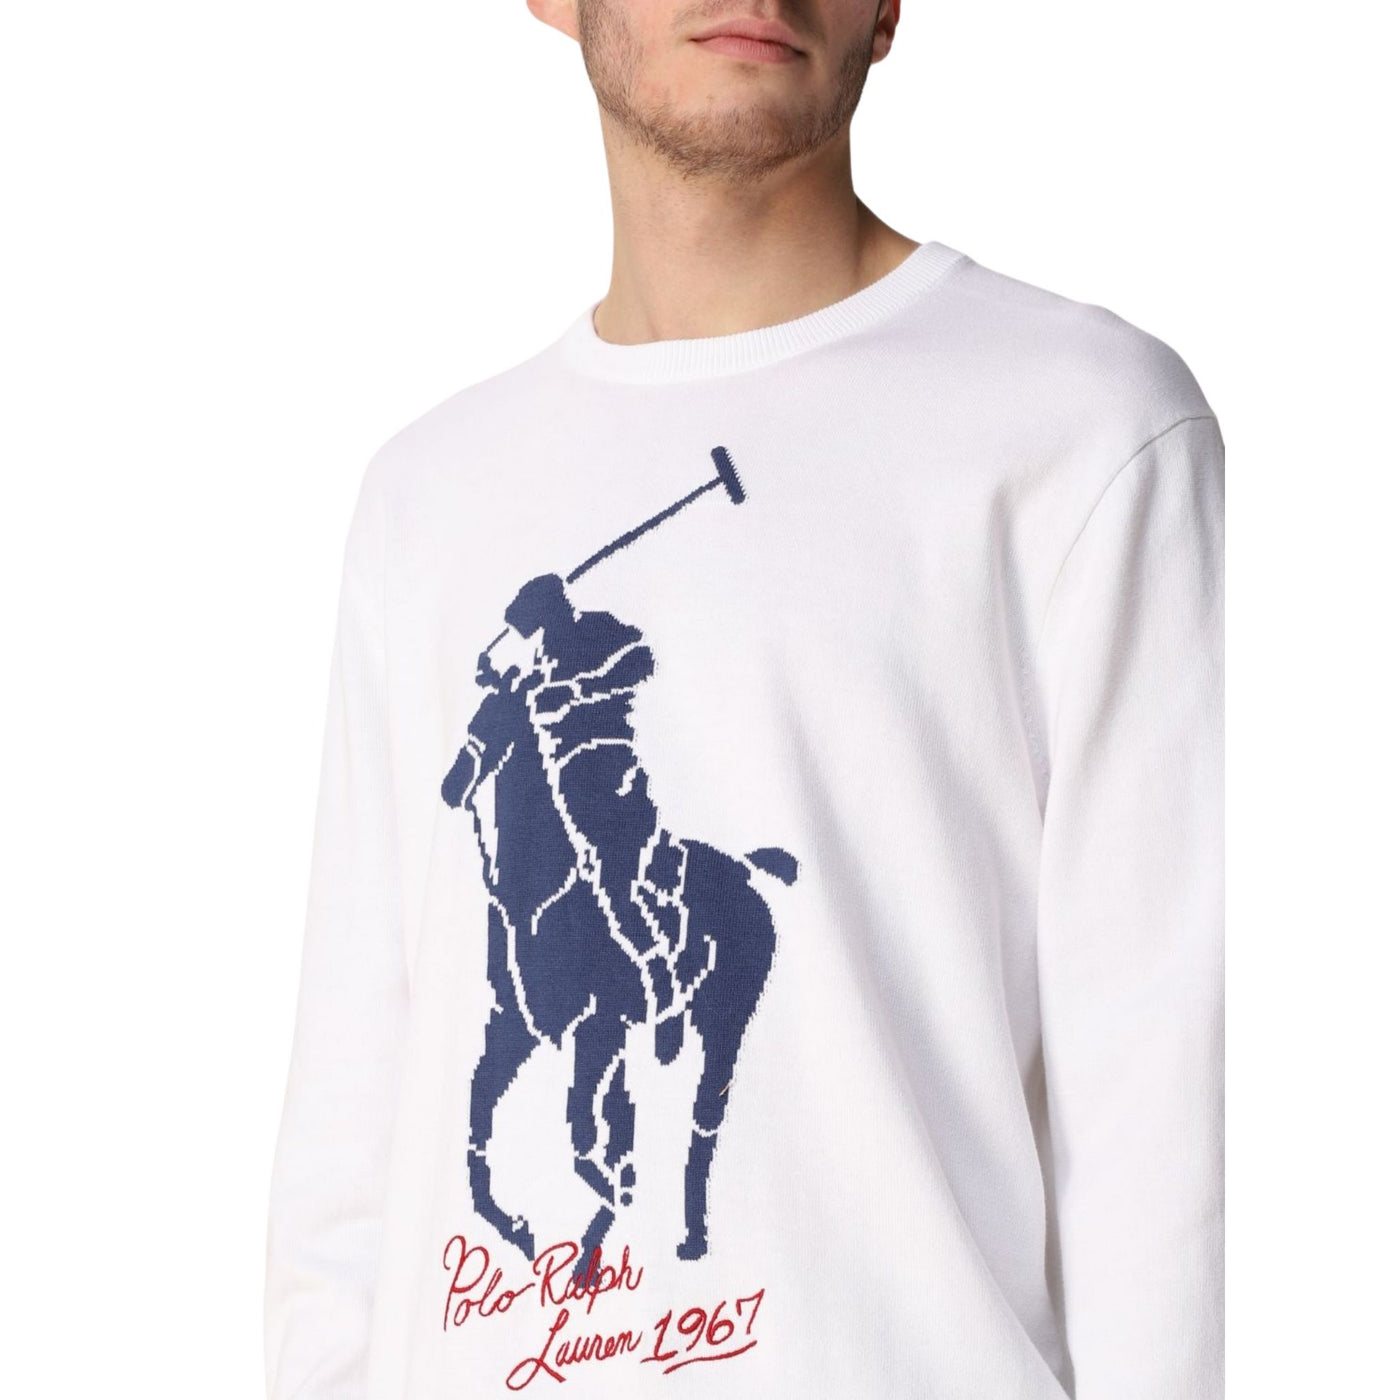 Maglia uomo Polo Ralph Lauren su modello dettaglio logo